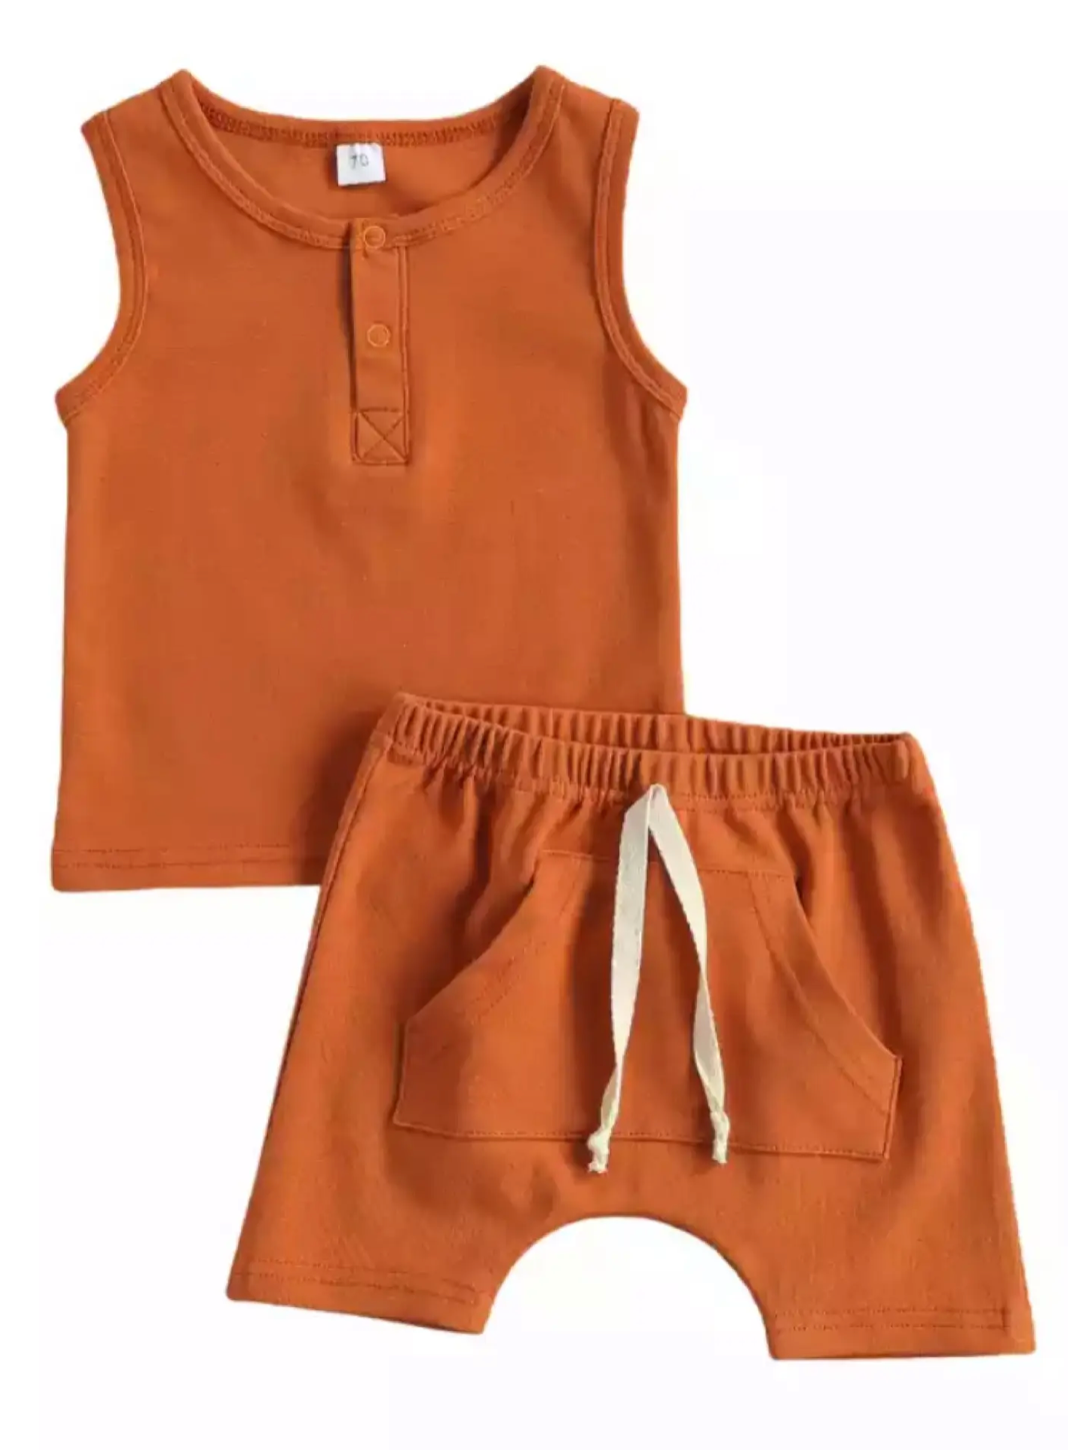 Orange Lounger Tank + Shorts - Clothe Boutique